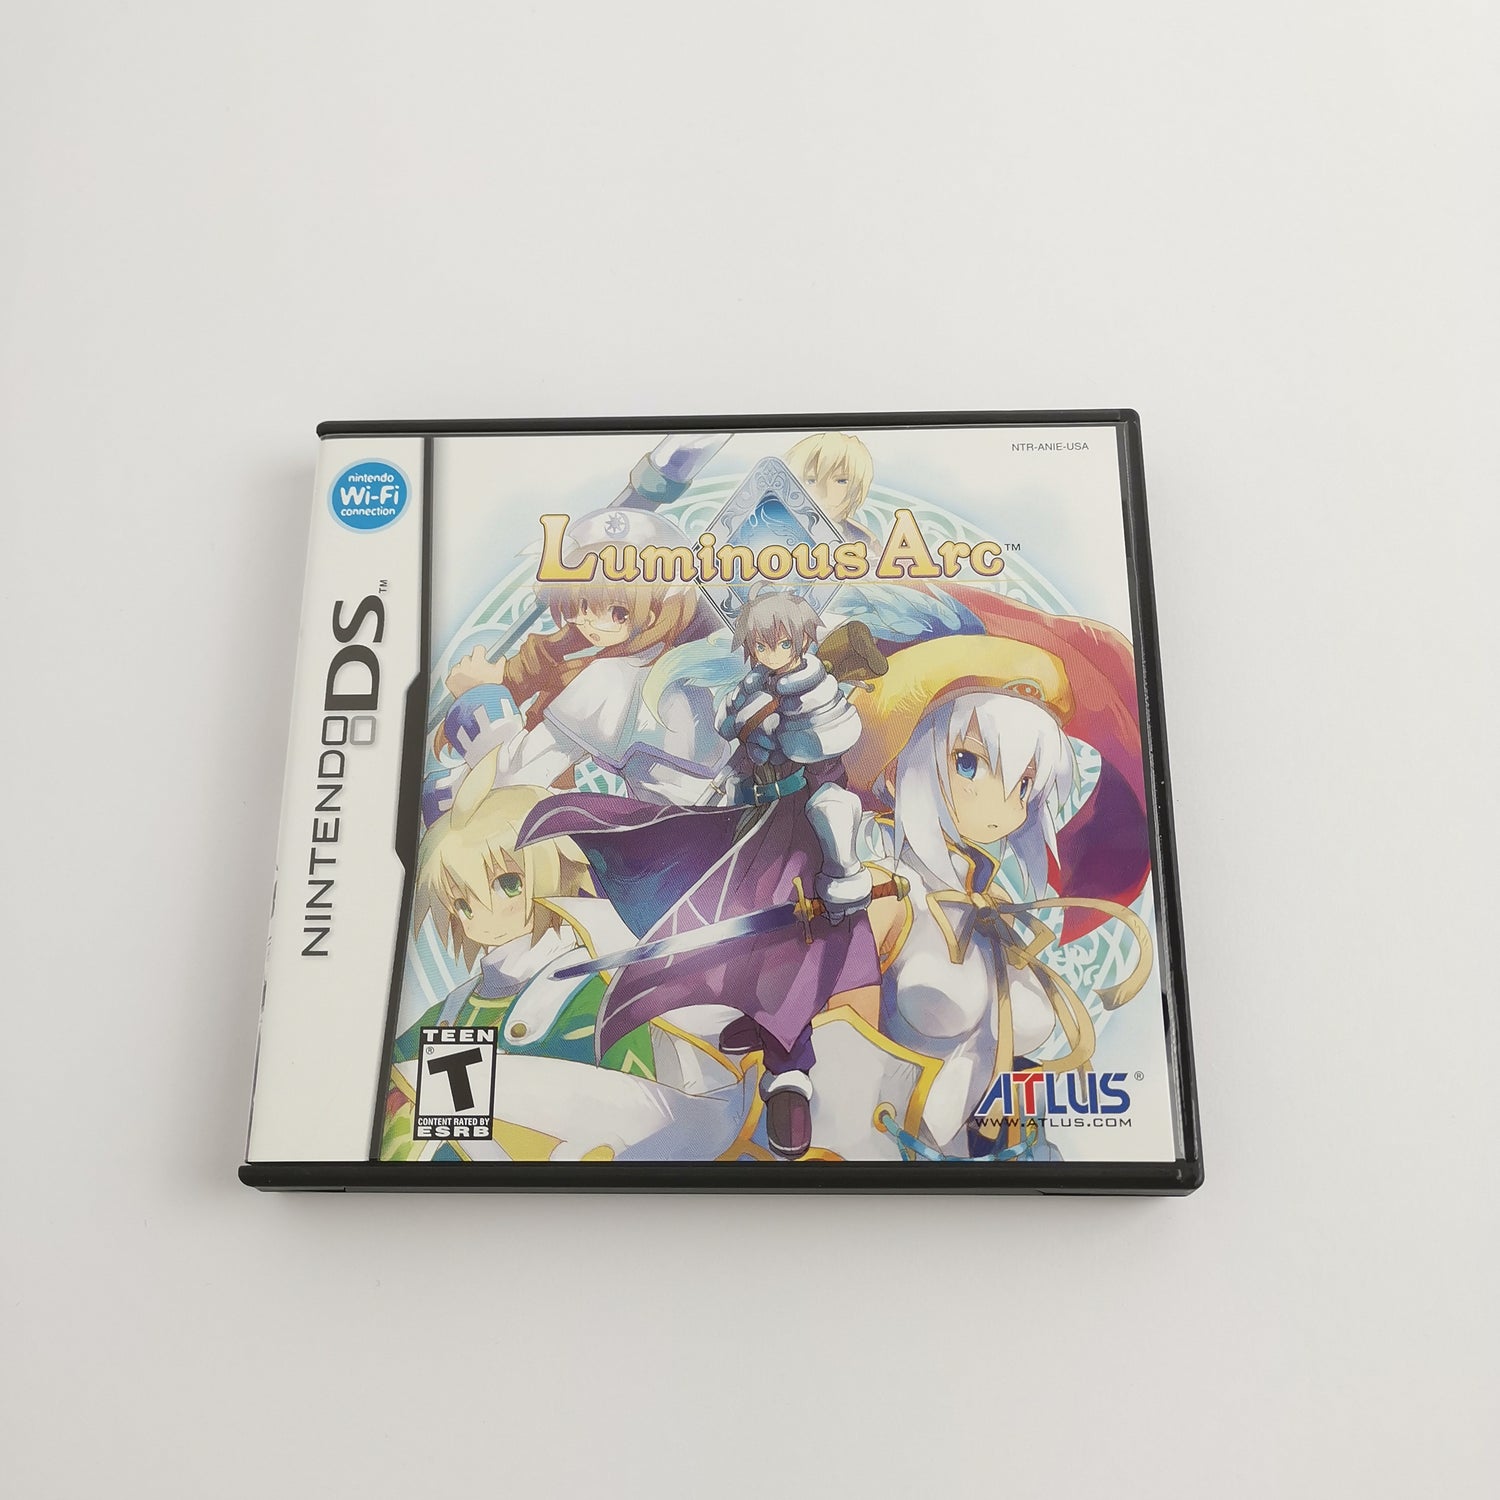 Nintendo DS Game: Luminous Arc | 2DS 3DS compatible - OVP NTSC-U/C USA